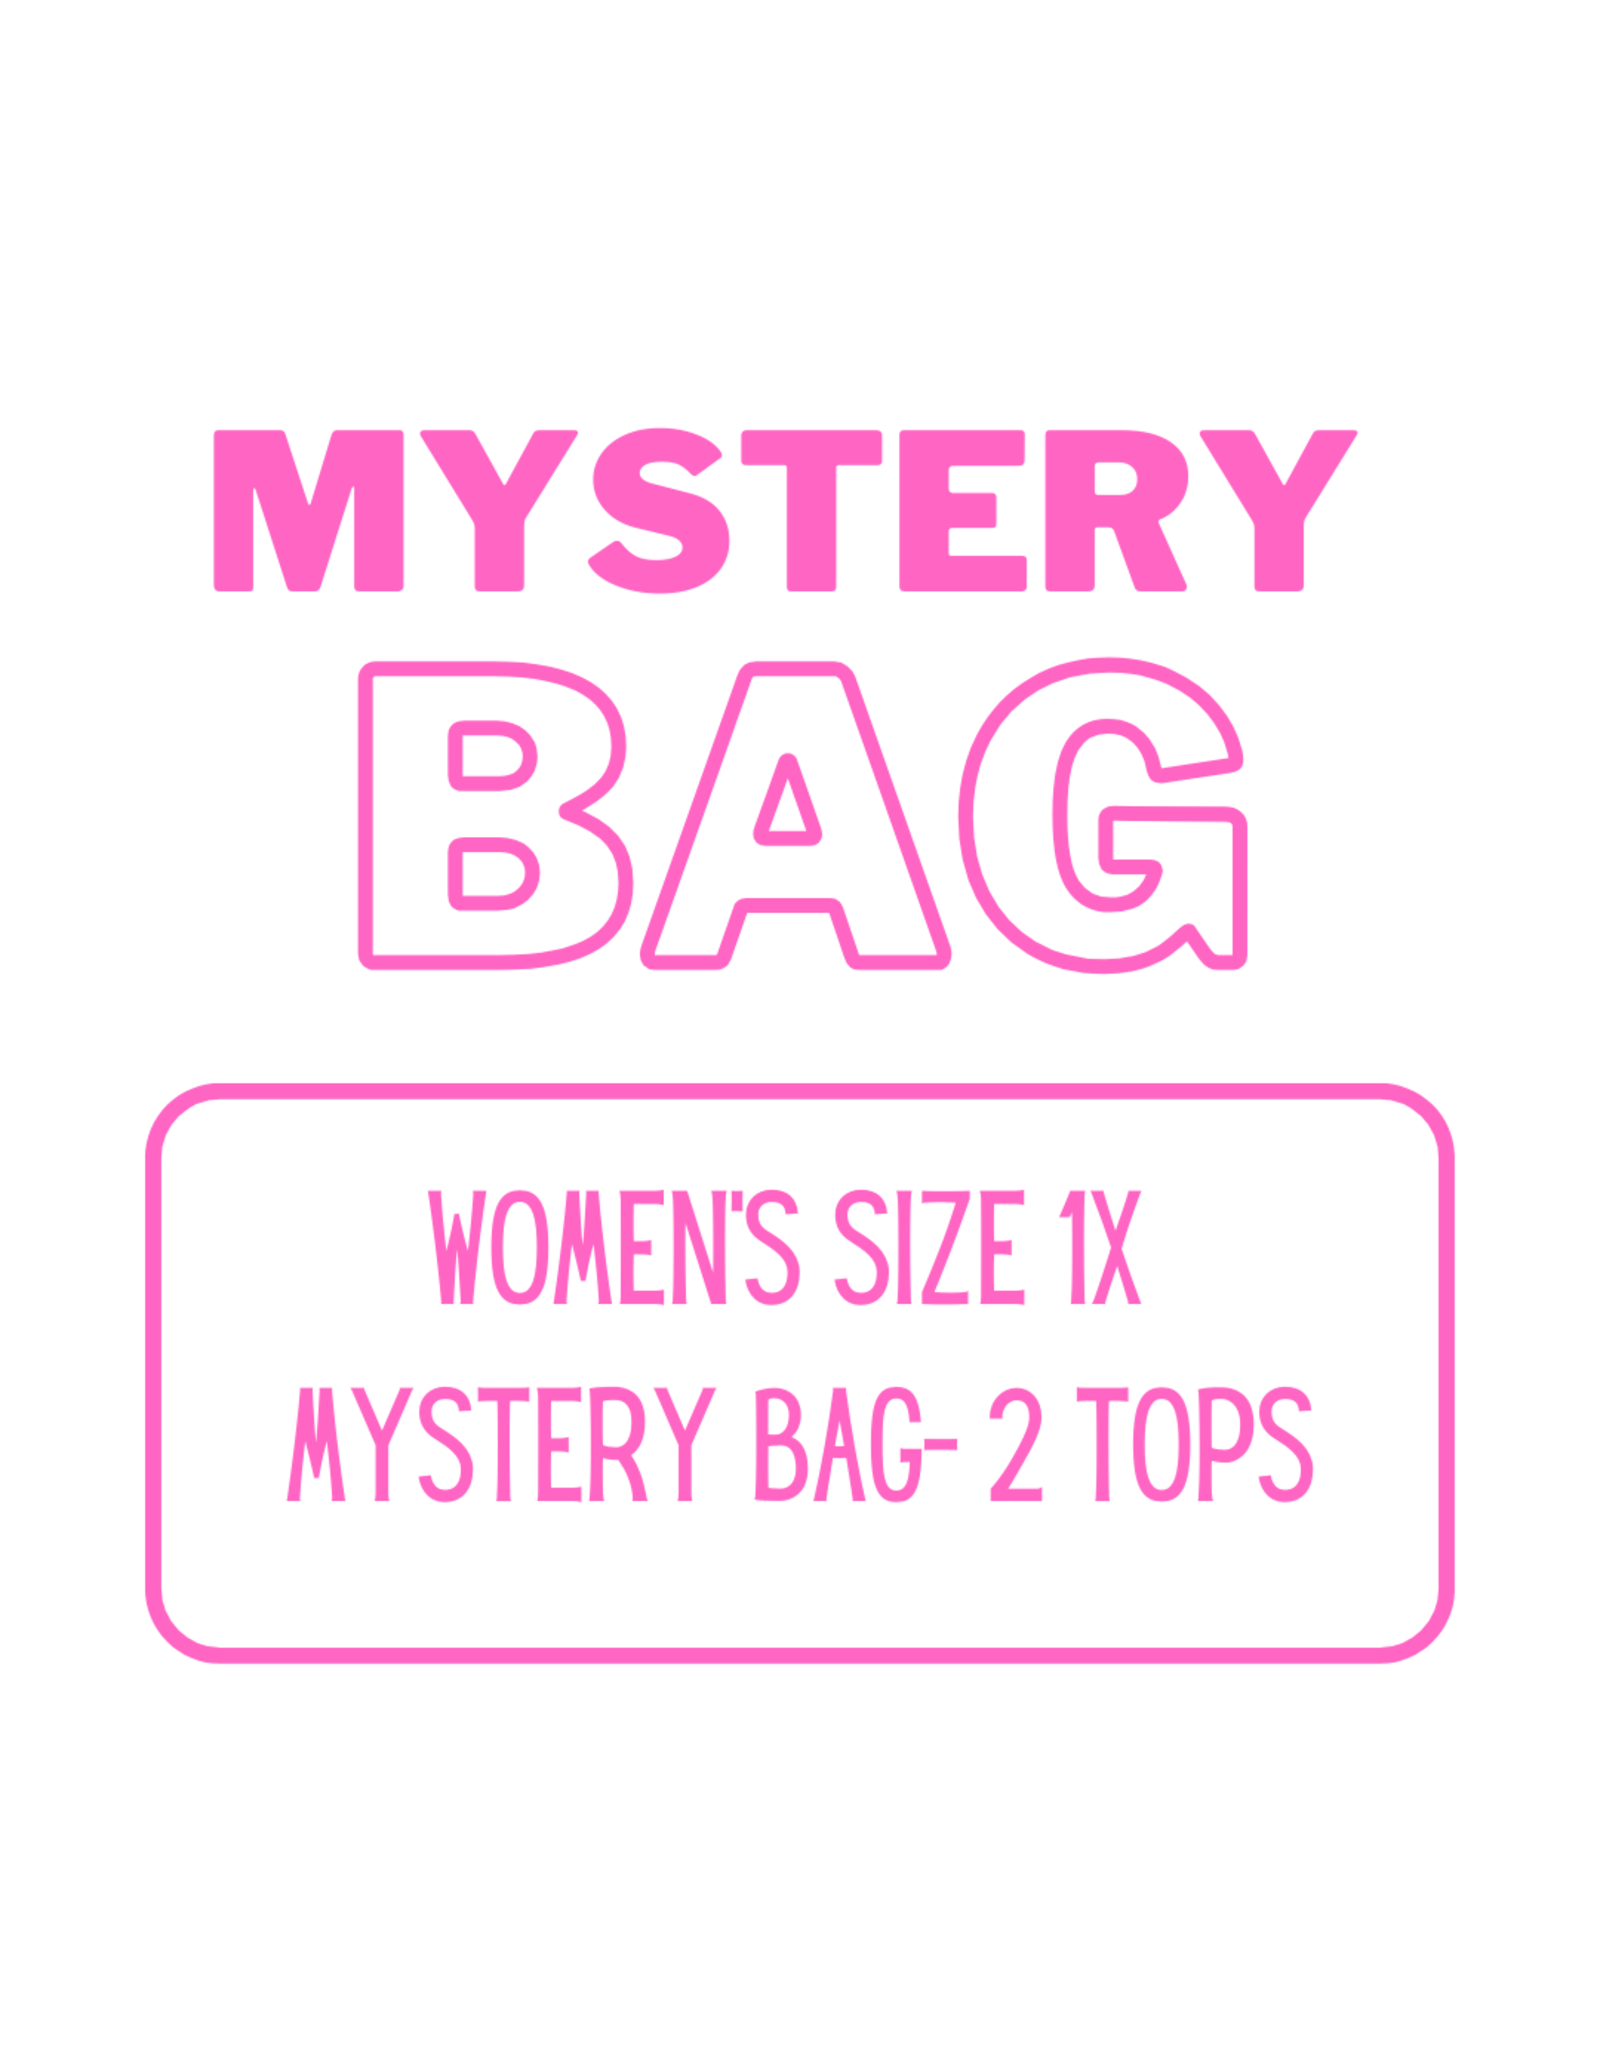 Women’s Clothing Mystery Bag 1X - 2 Tops (B)